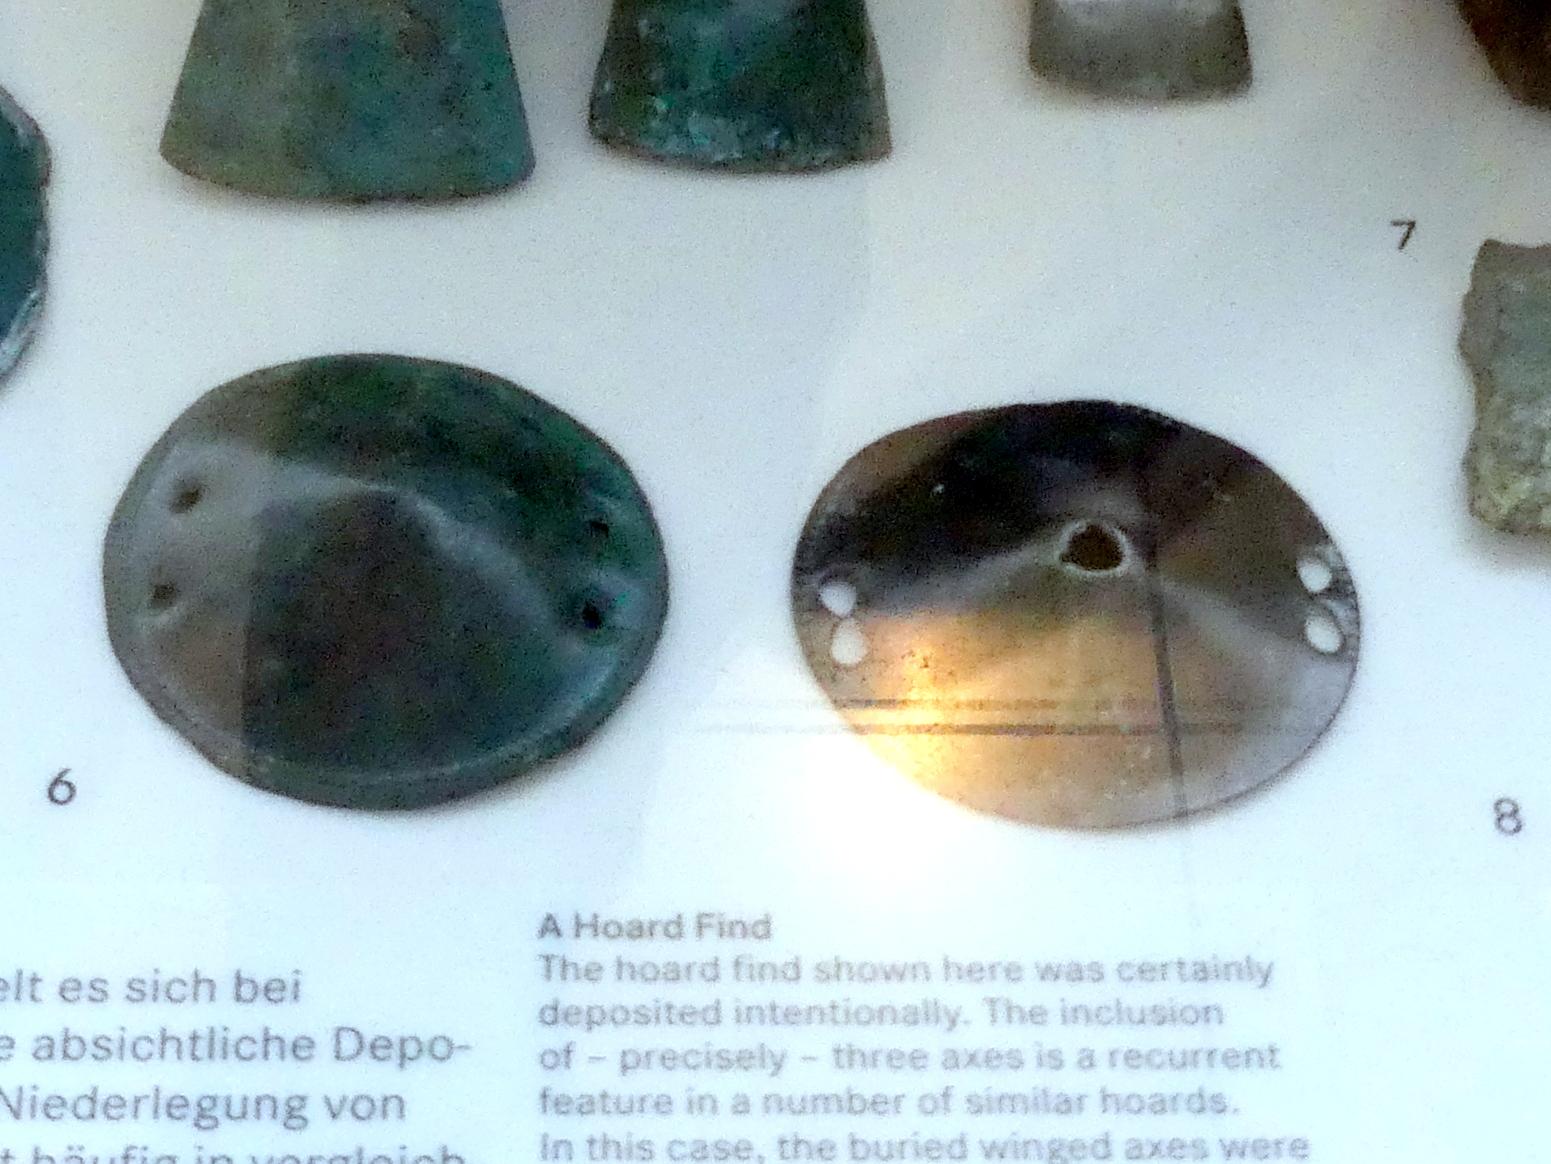 Zierscheiben, Urnenfelderzeit, 1400 - 700 v. Chr., 1300 - 1200 v. Chr., Bild 1/2